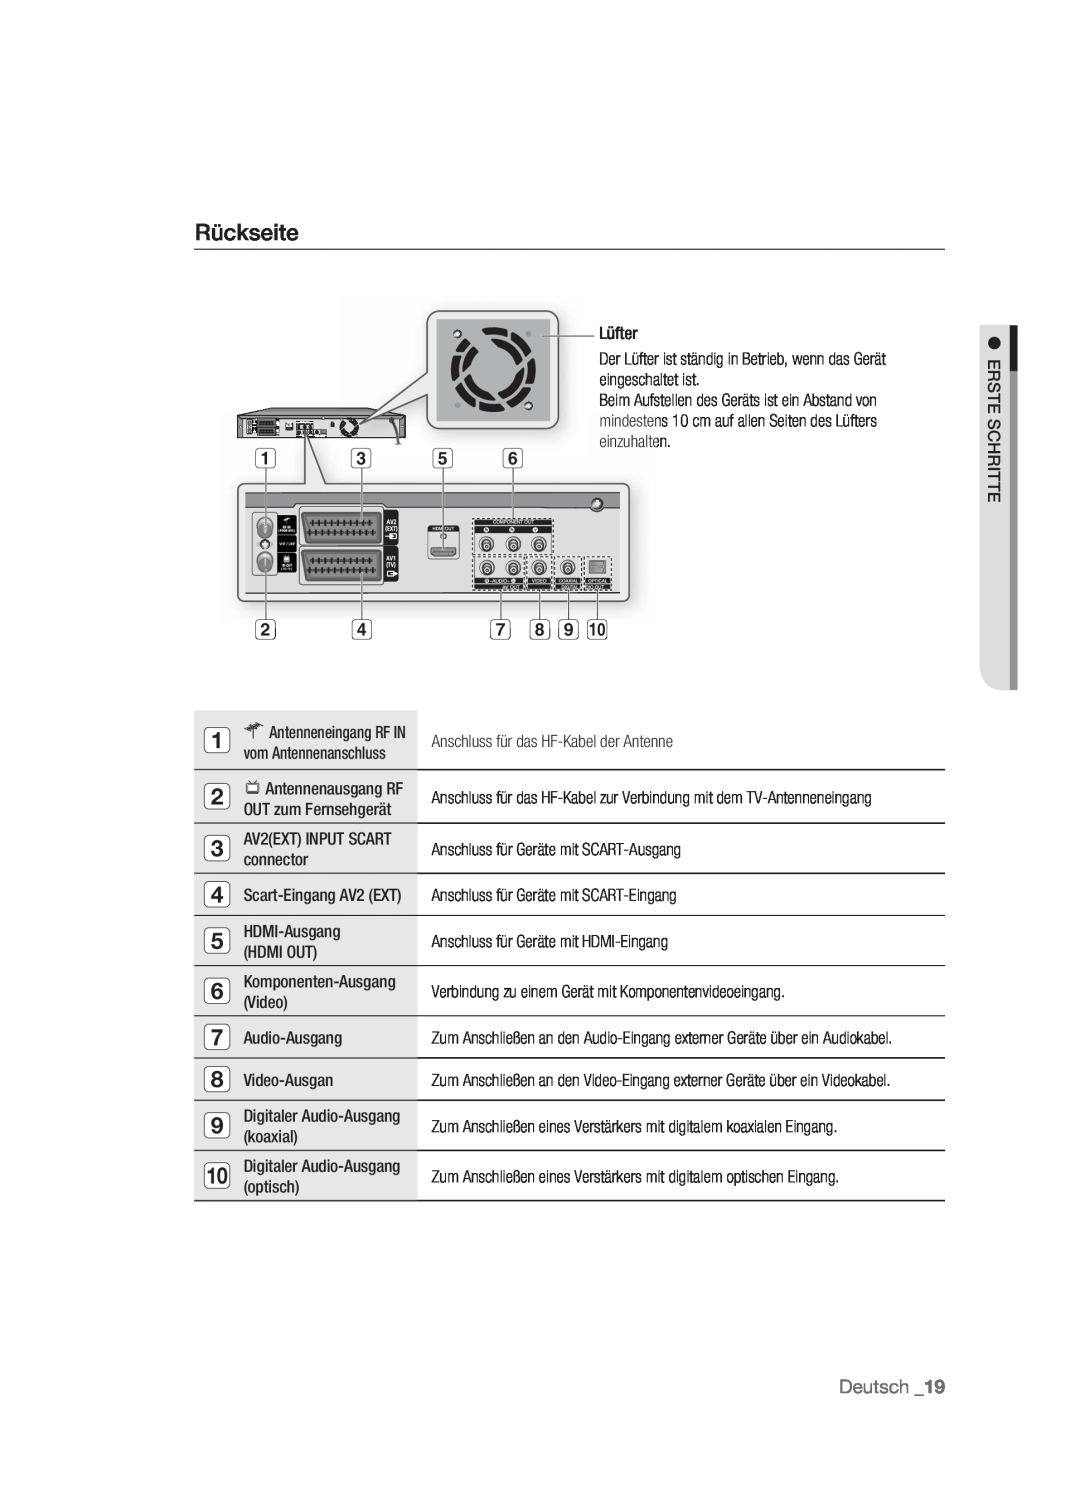 Samsung DVD-HR773/AUS Rückseite, Anschluss für das HF-Kabel der Antenne, Anschluss für Geräte mit SCART-Ausgang, connector 